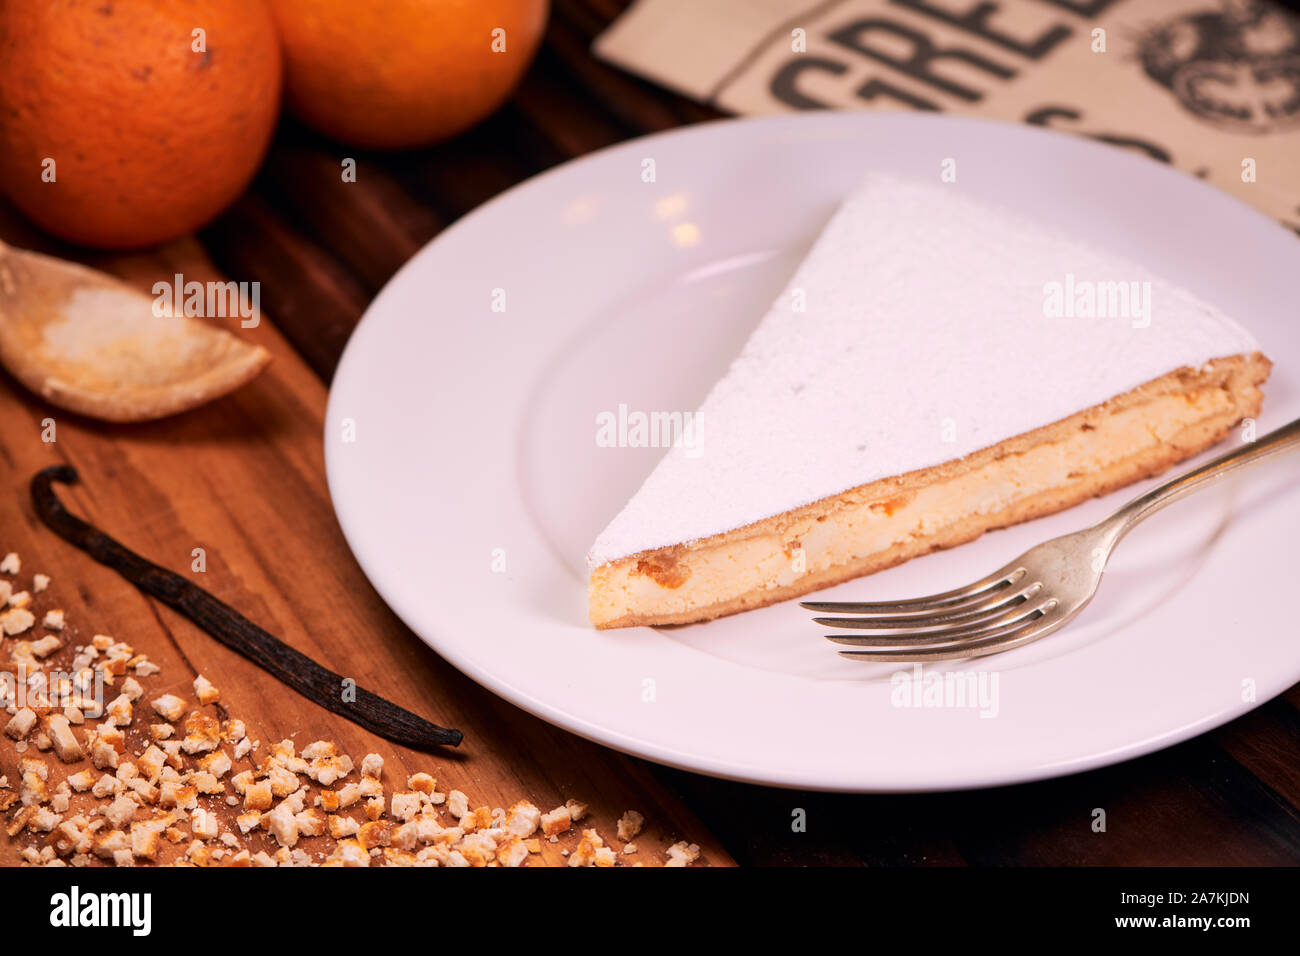 Portion de gâteau au fromage ricotta italienne faite maison avec des écorces d'orange confites hachées et saupoudré de sucre en poudre sur fond de bois. L'Italien destinat Banque D'Images